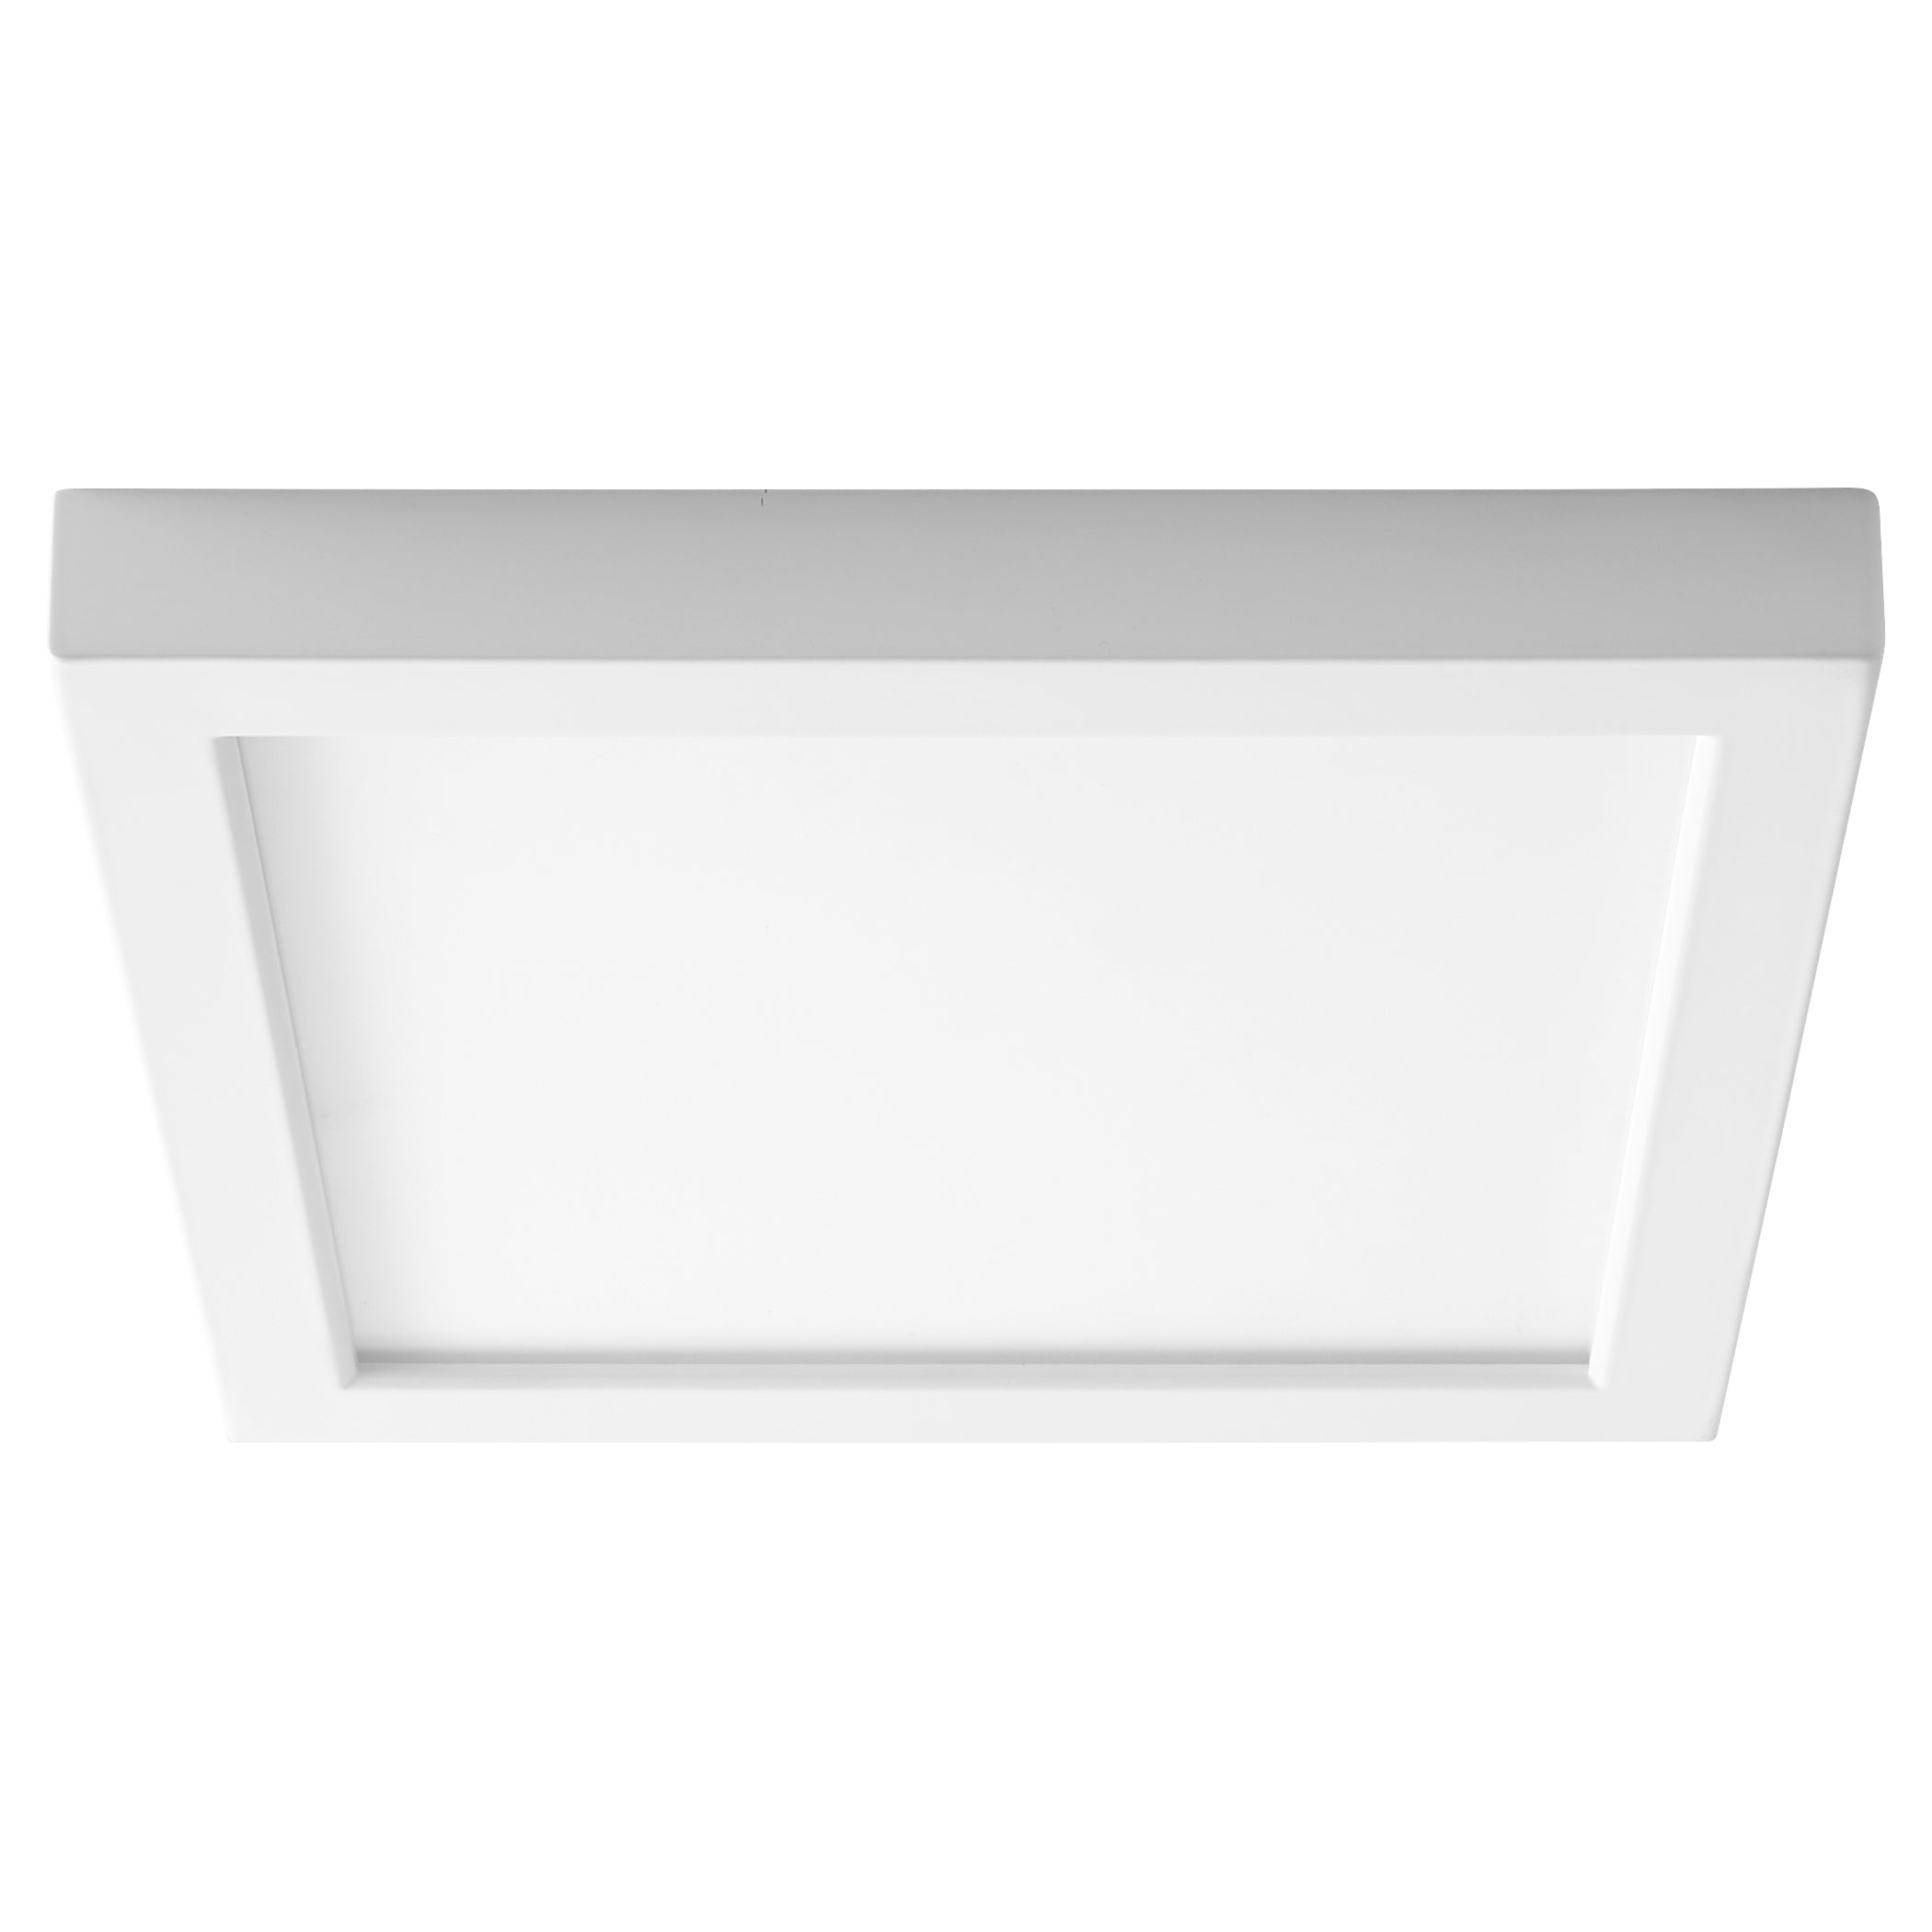 Oxygen ALTAIR 3-334-6 Modern Square Flush Mount LED Light Fixture - White